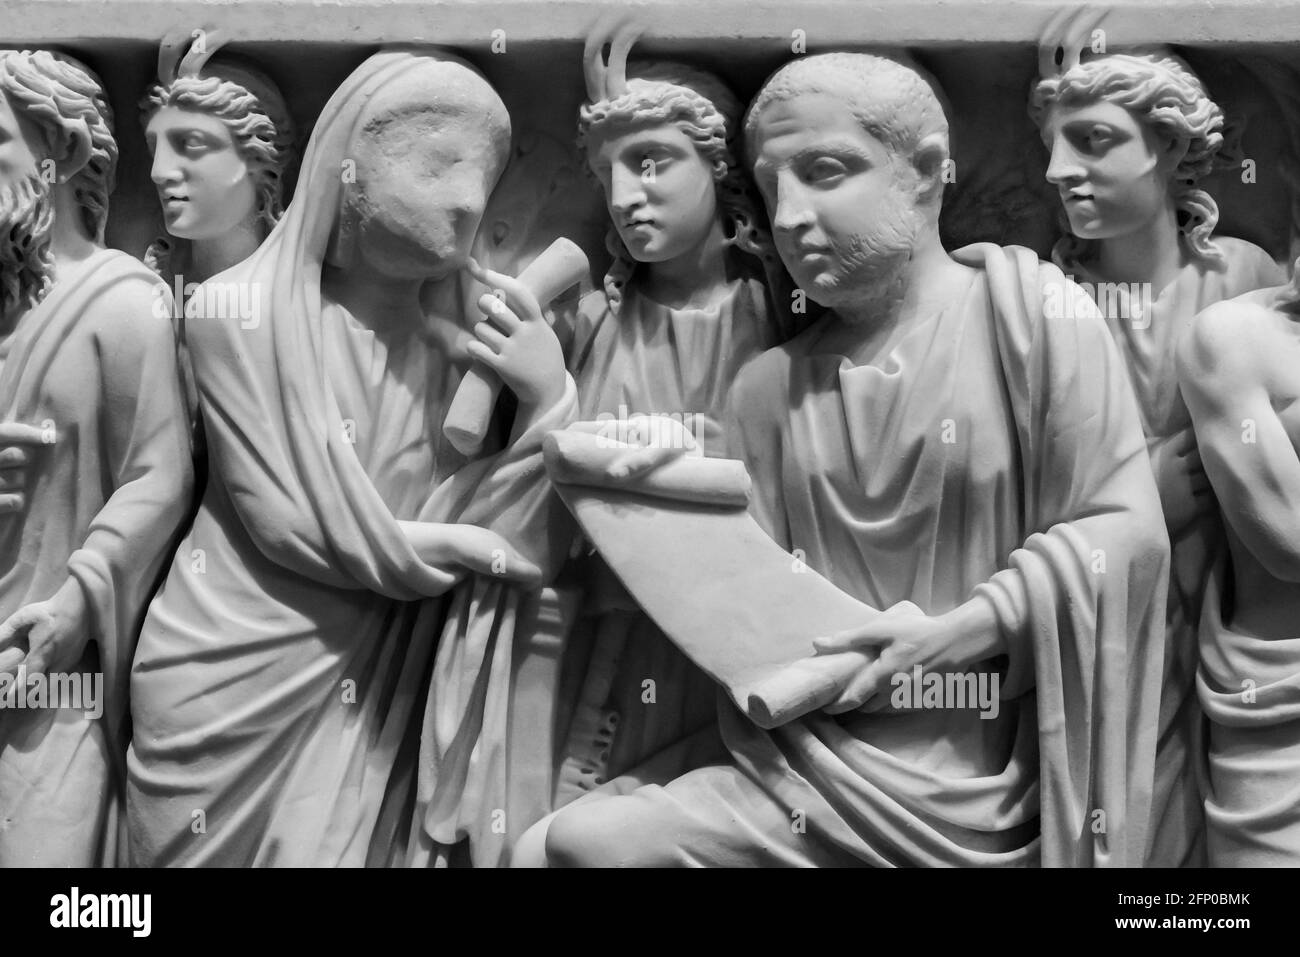 Schwarz-Weiß-Foto von alten römischen Skulpturen geschnitzt auf Marmorwand, die eine Frau mit einem Schleier zeigt, der mit einem spricht Mann, während er von Männern mit Hörnern umgeben ist Stockfoto